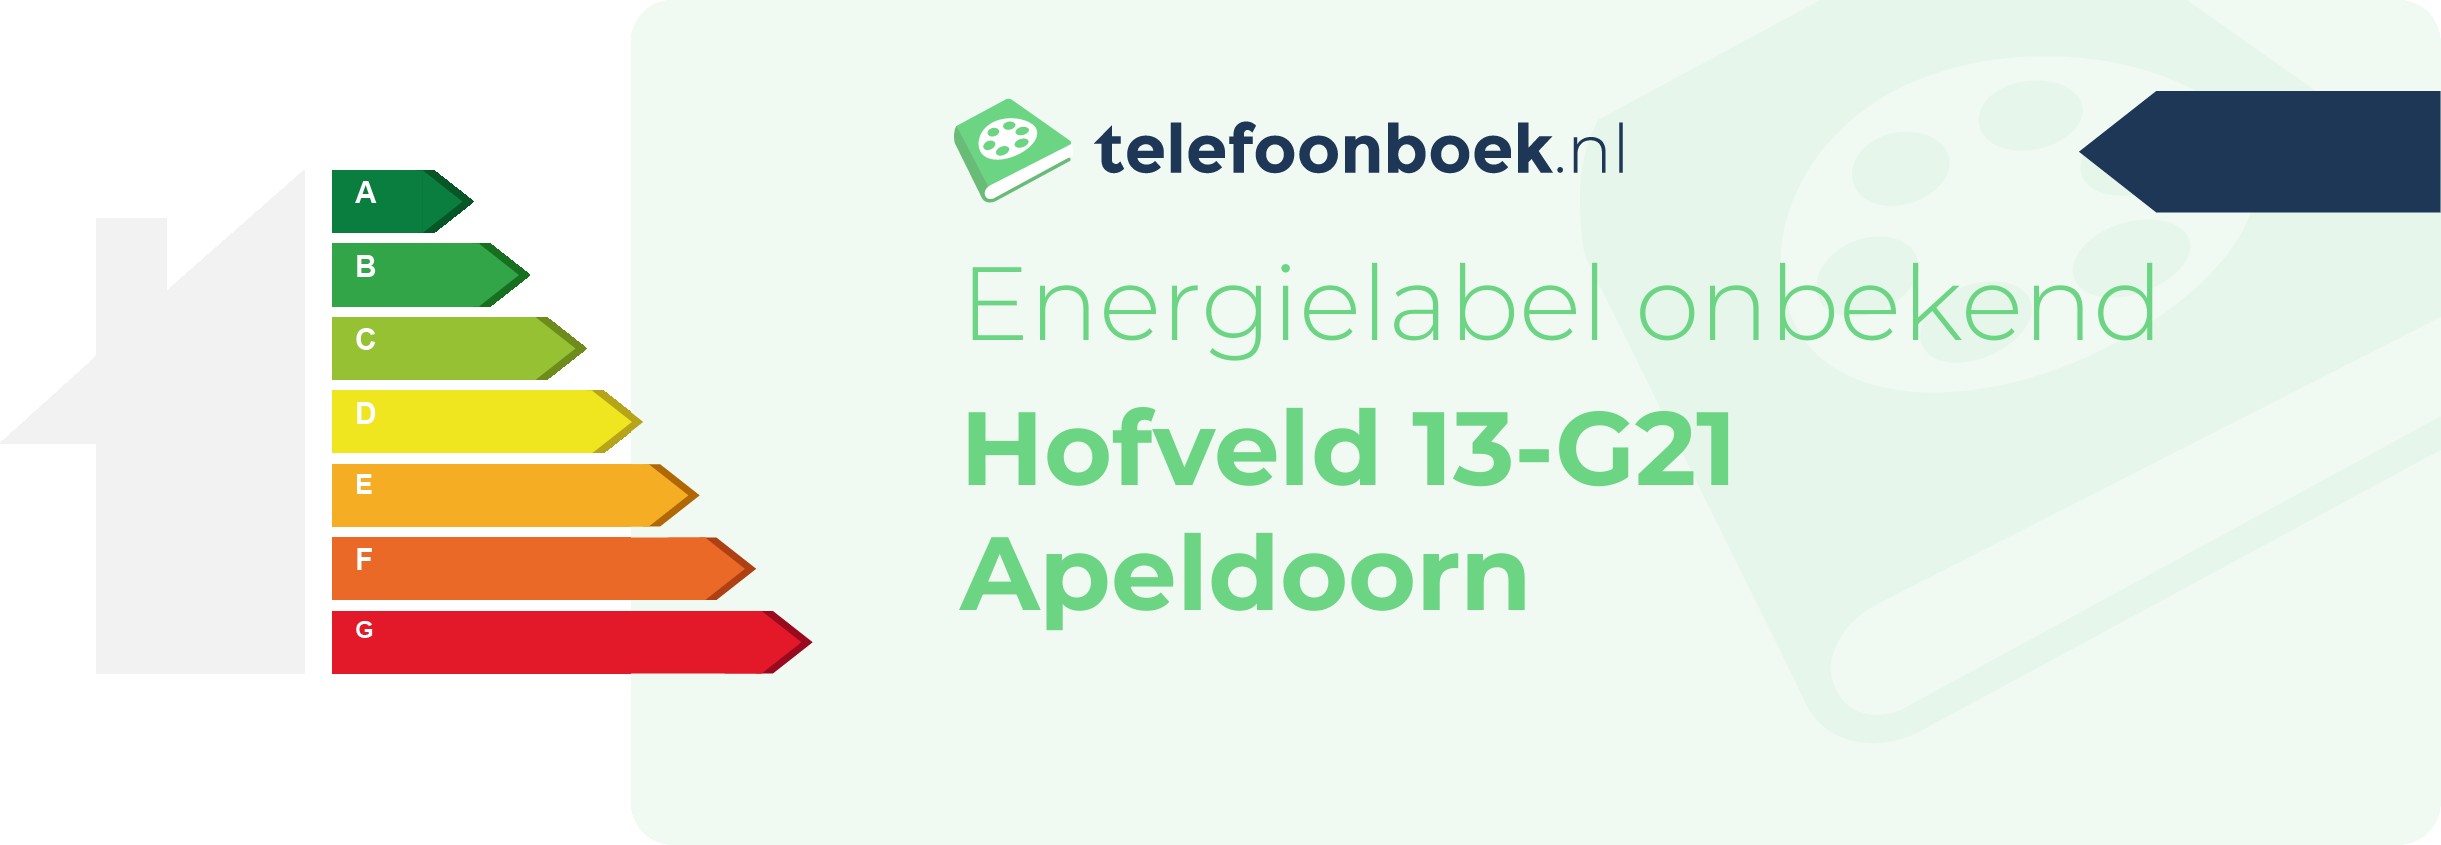 Energielabel Hofveld 13-G21 Apeldoorn